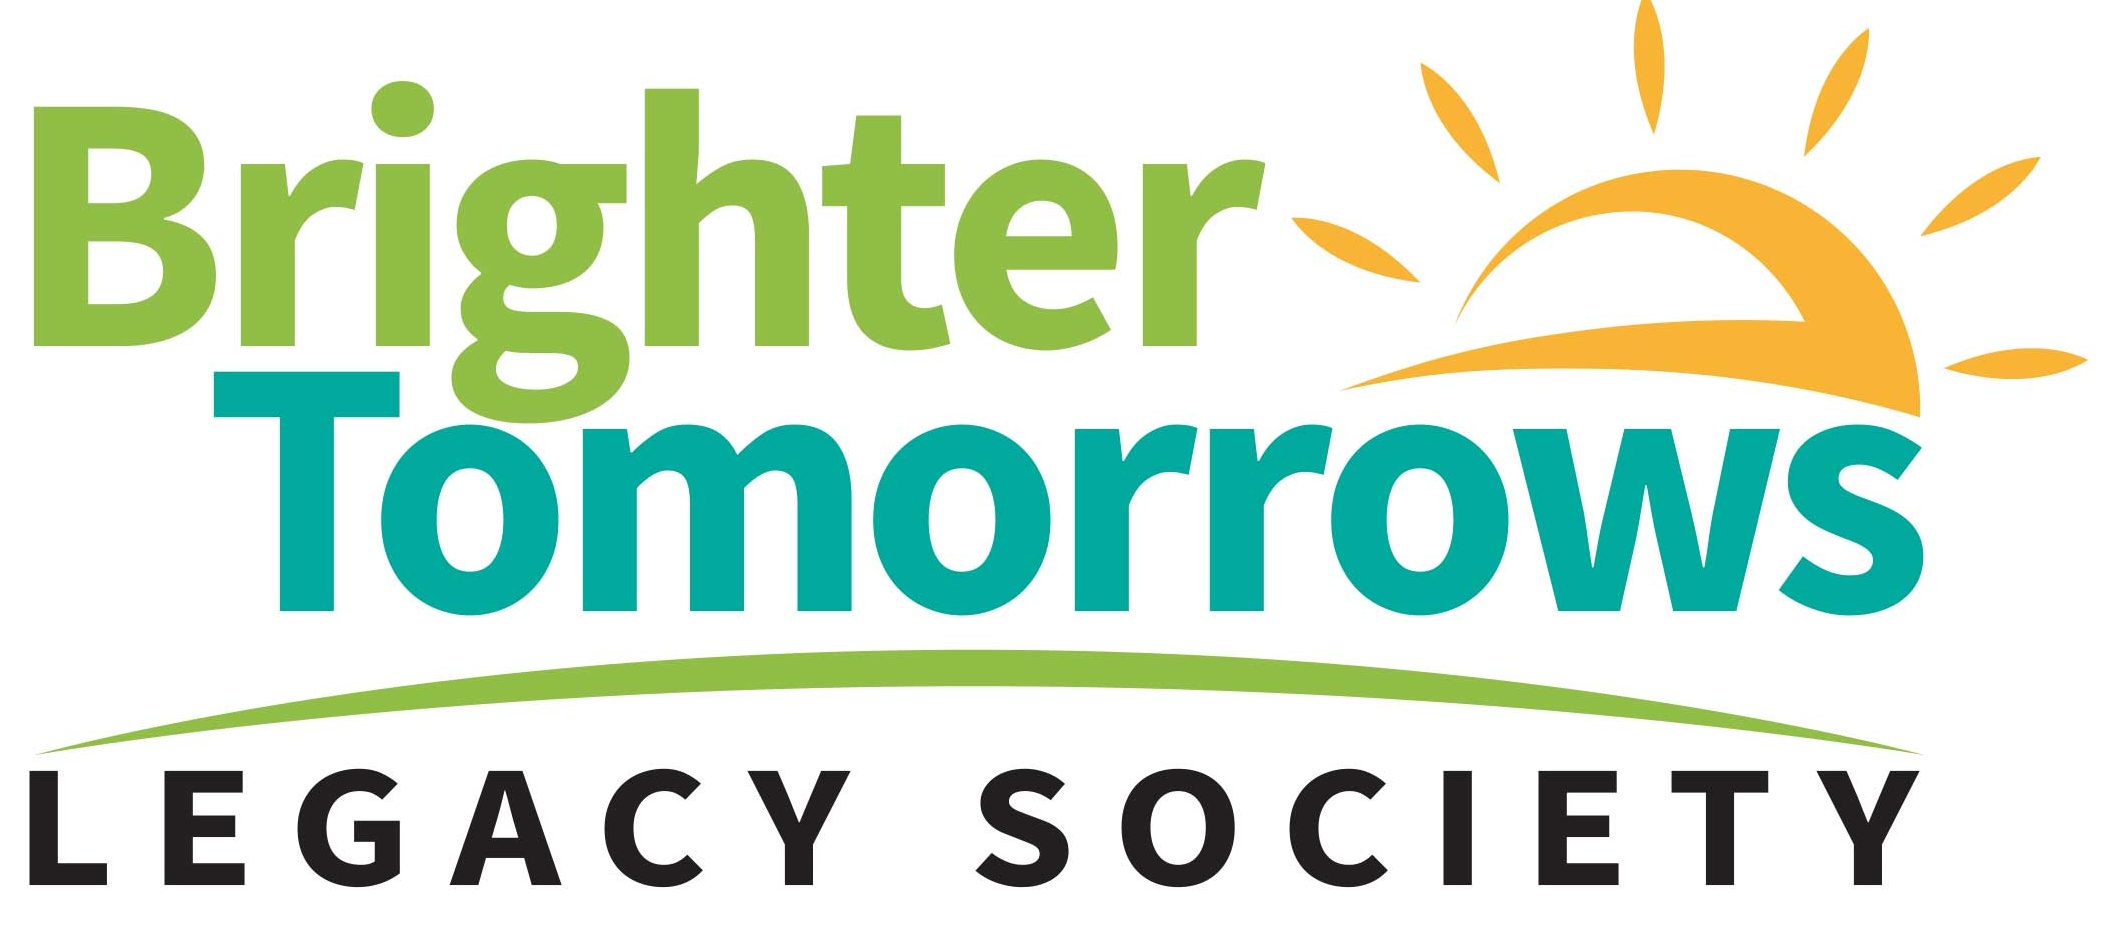 BrighterTomorrows_Logo_2021